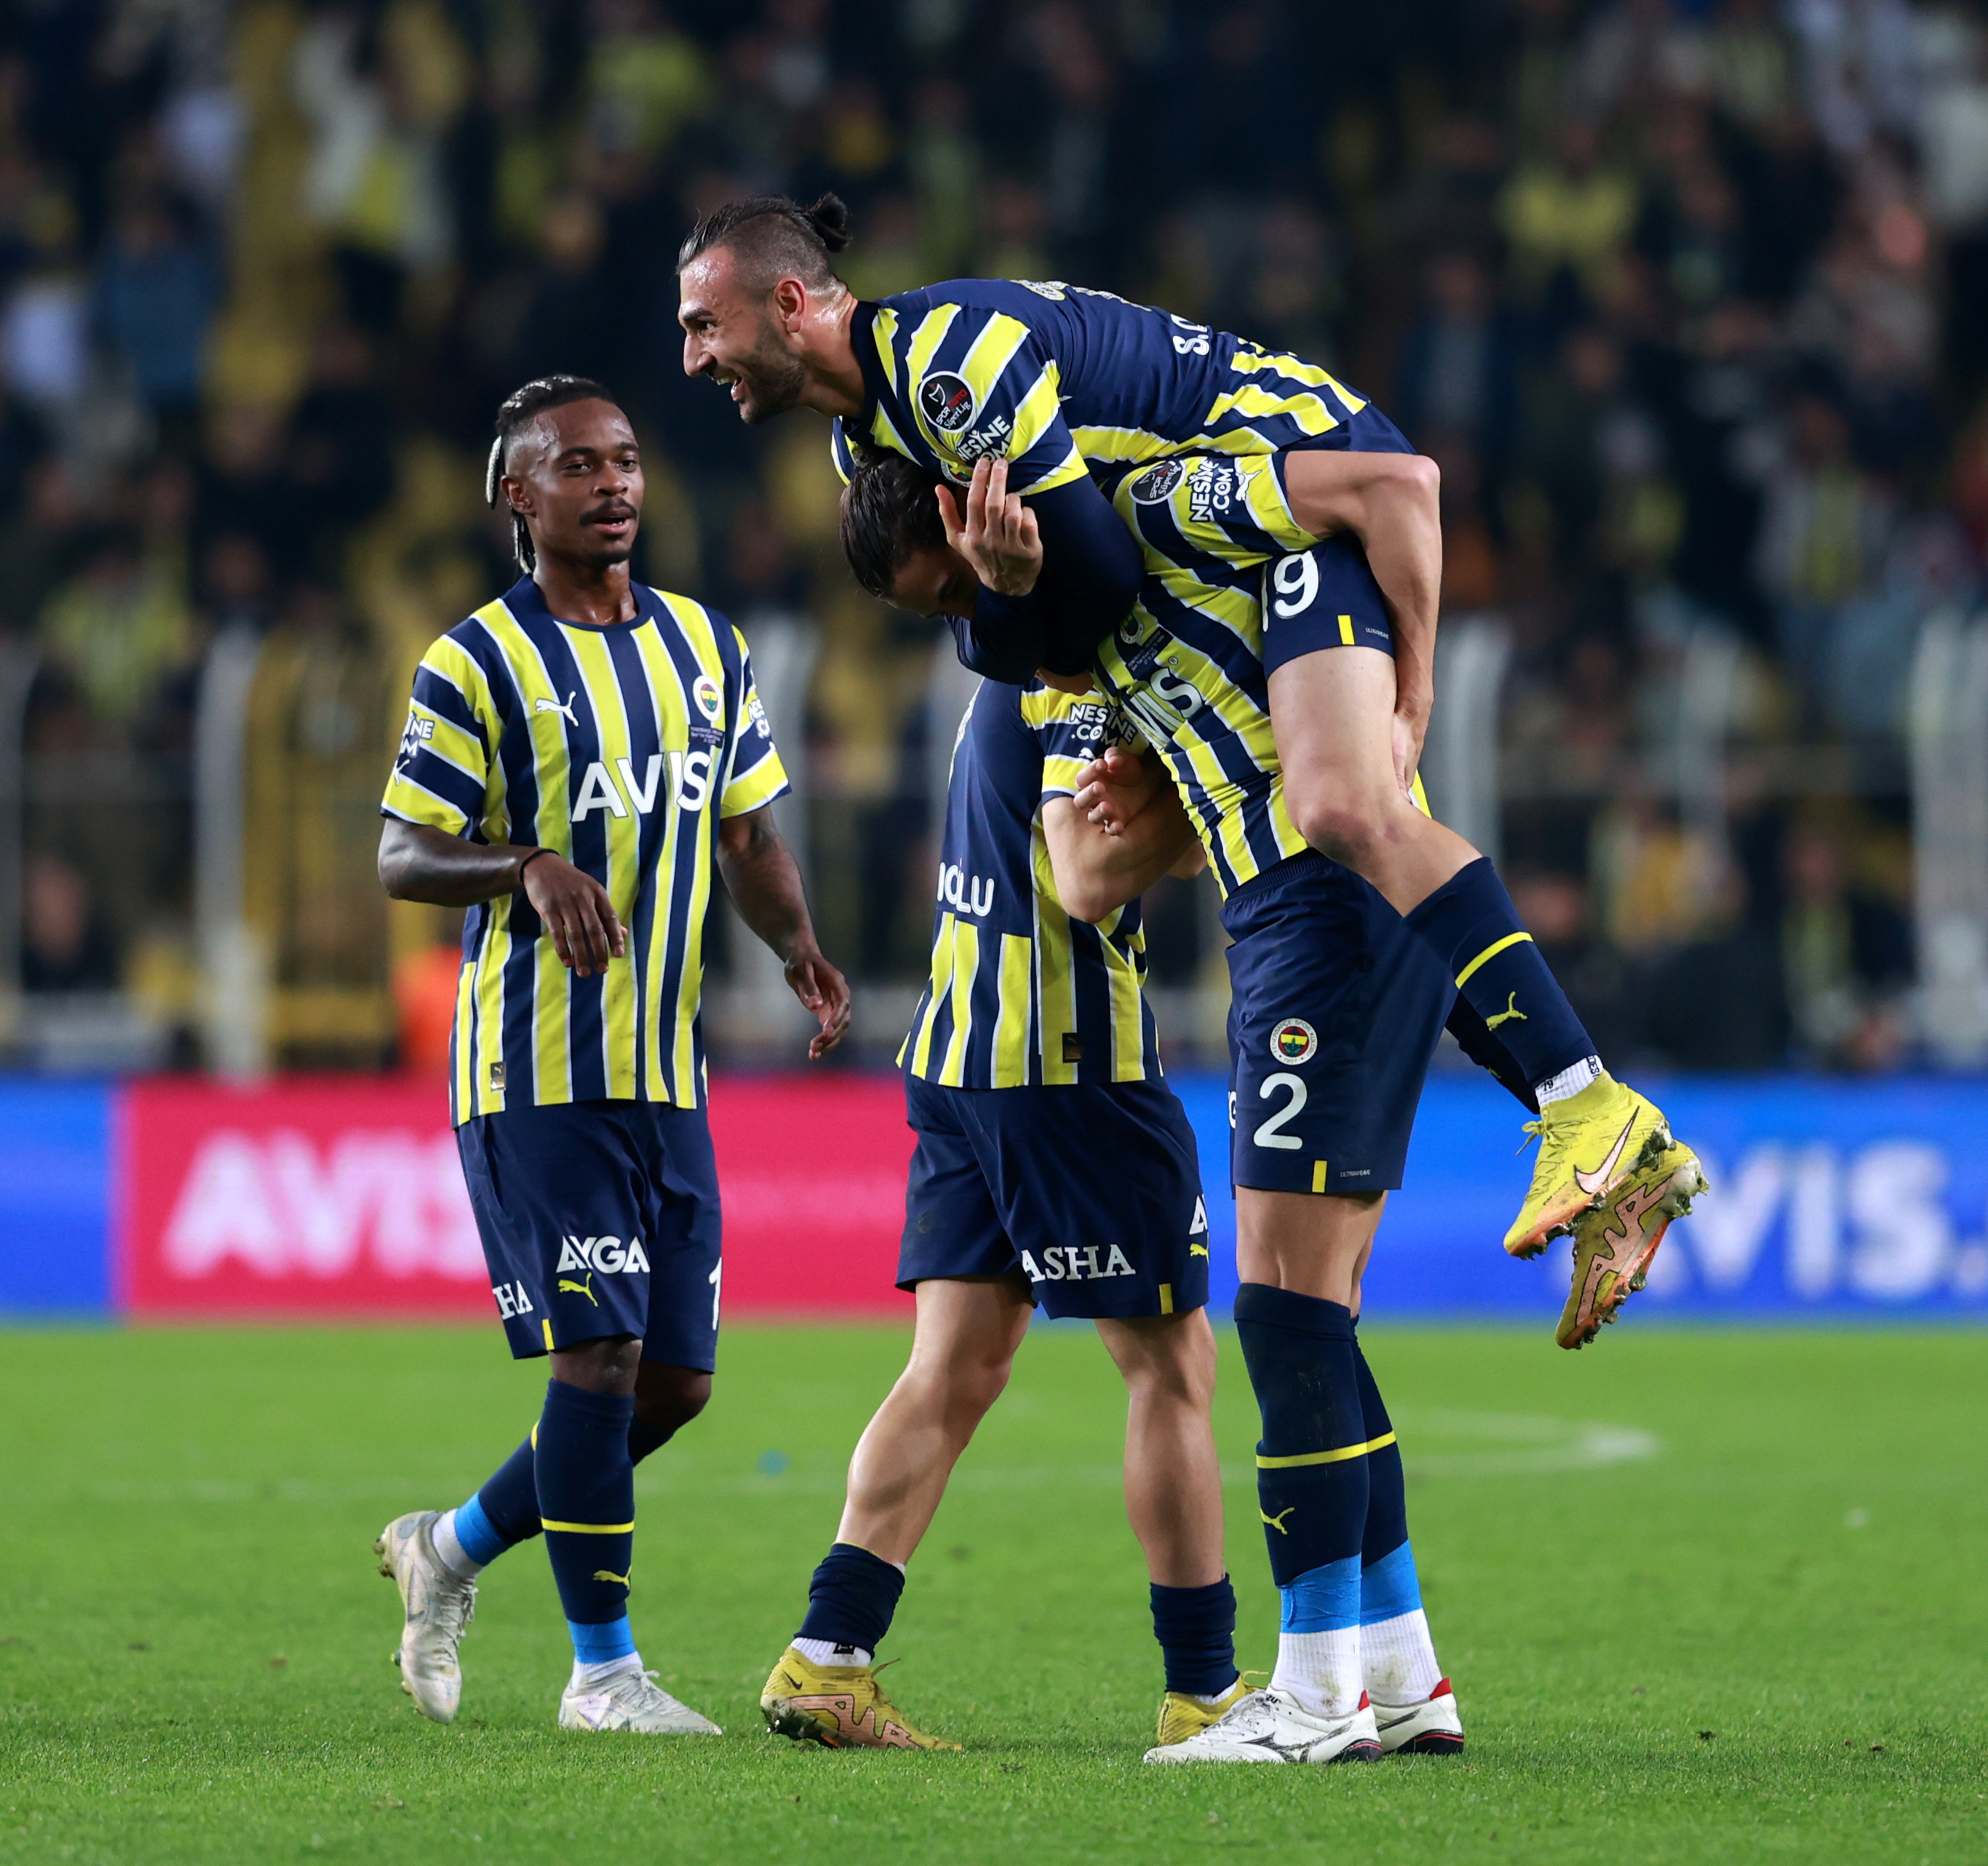 UEFA Europa League on X: "🟡🔵 Fenerbahçe. Back to winning ways 💪 #UEL  https://t.co/ATDVqrkIXj" / X